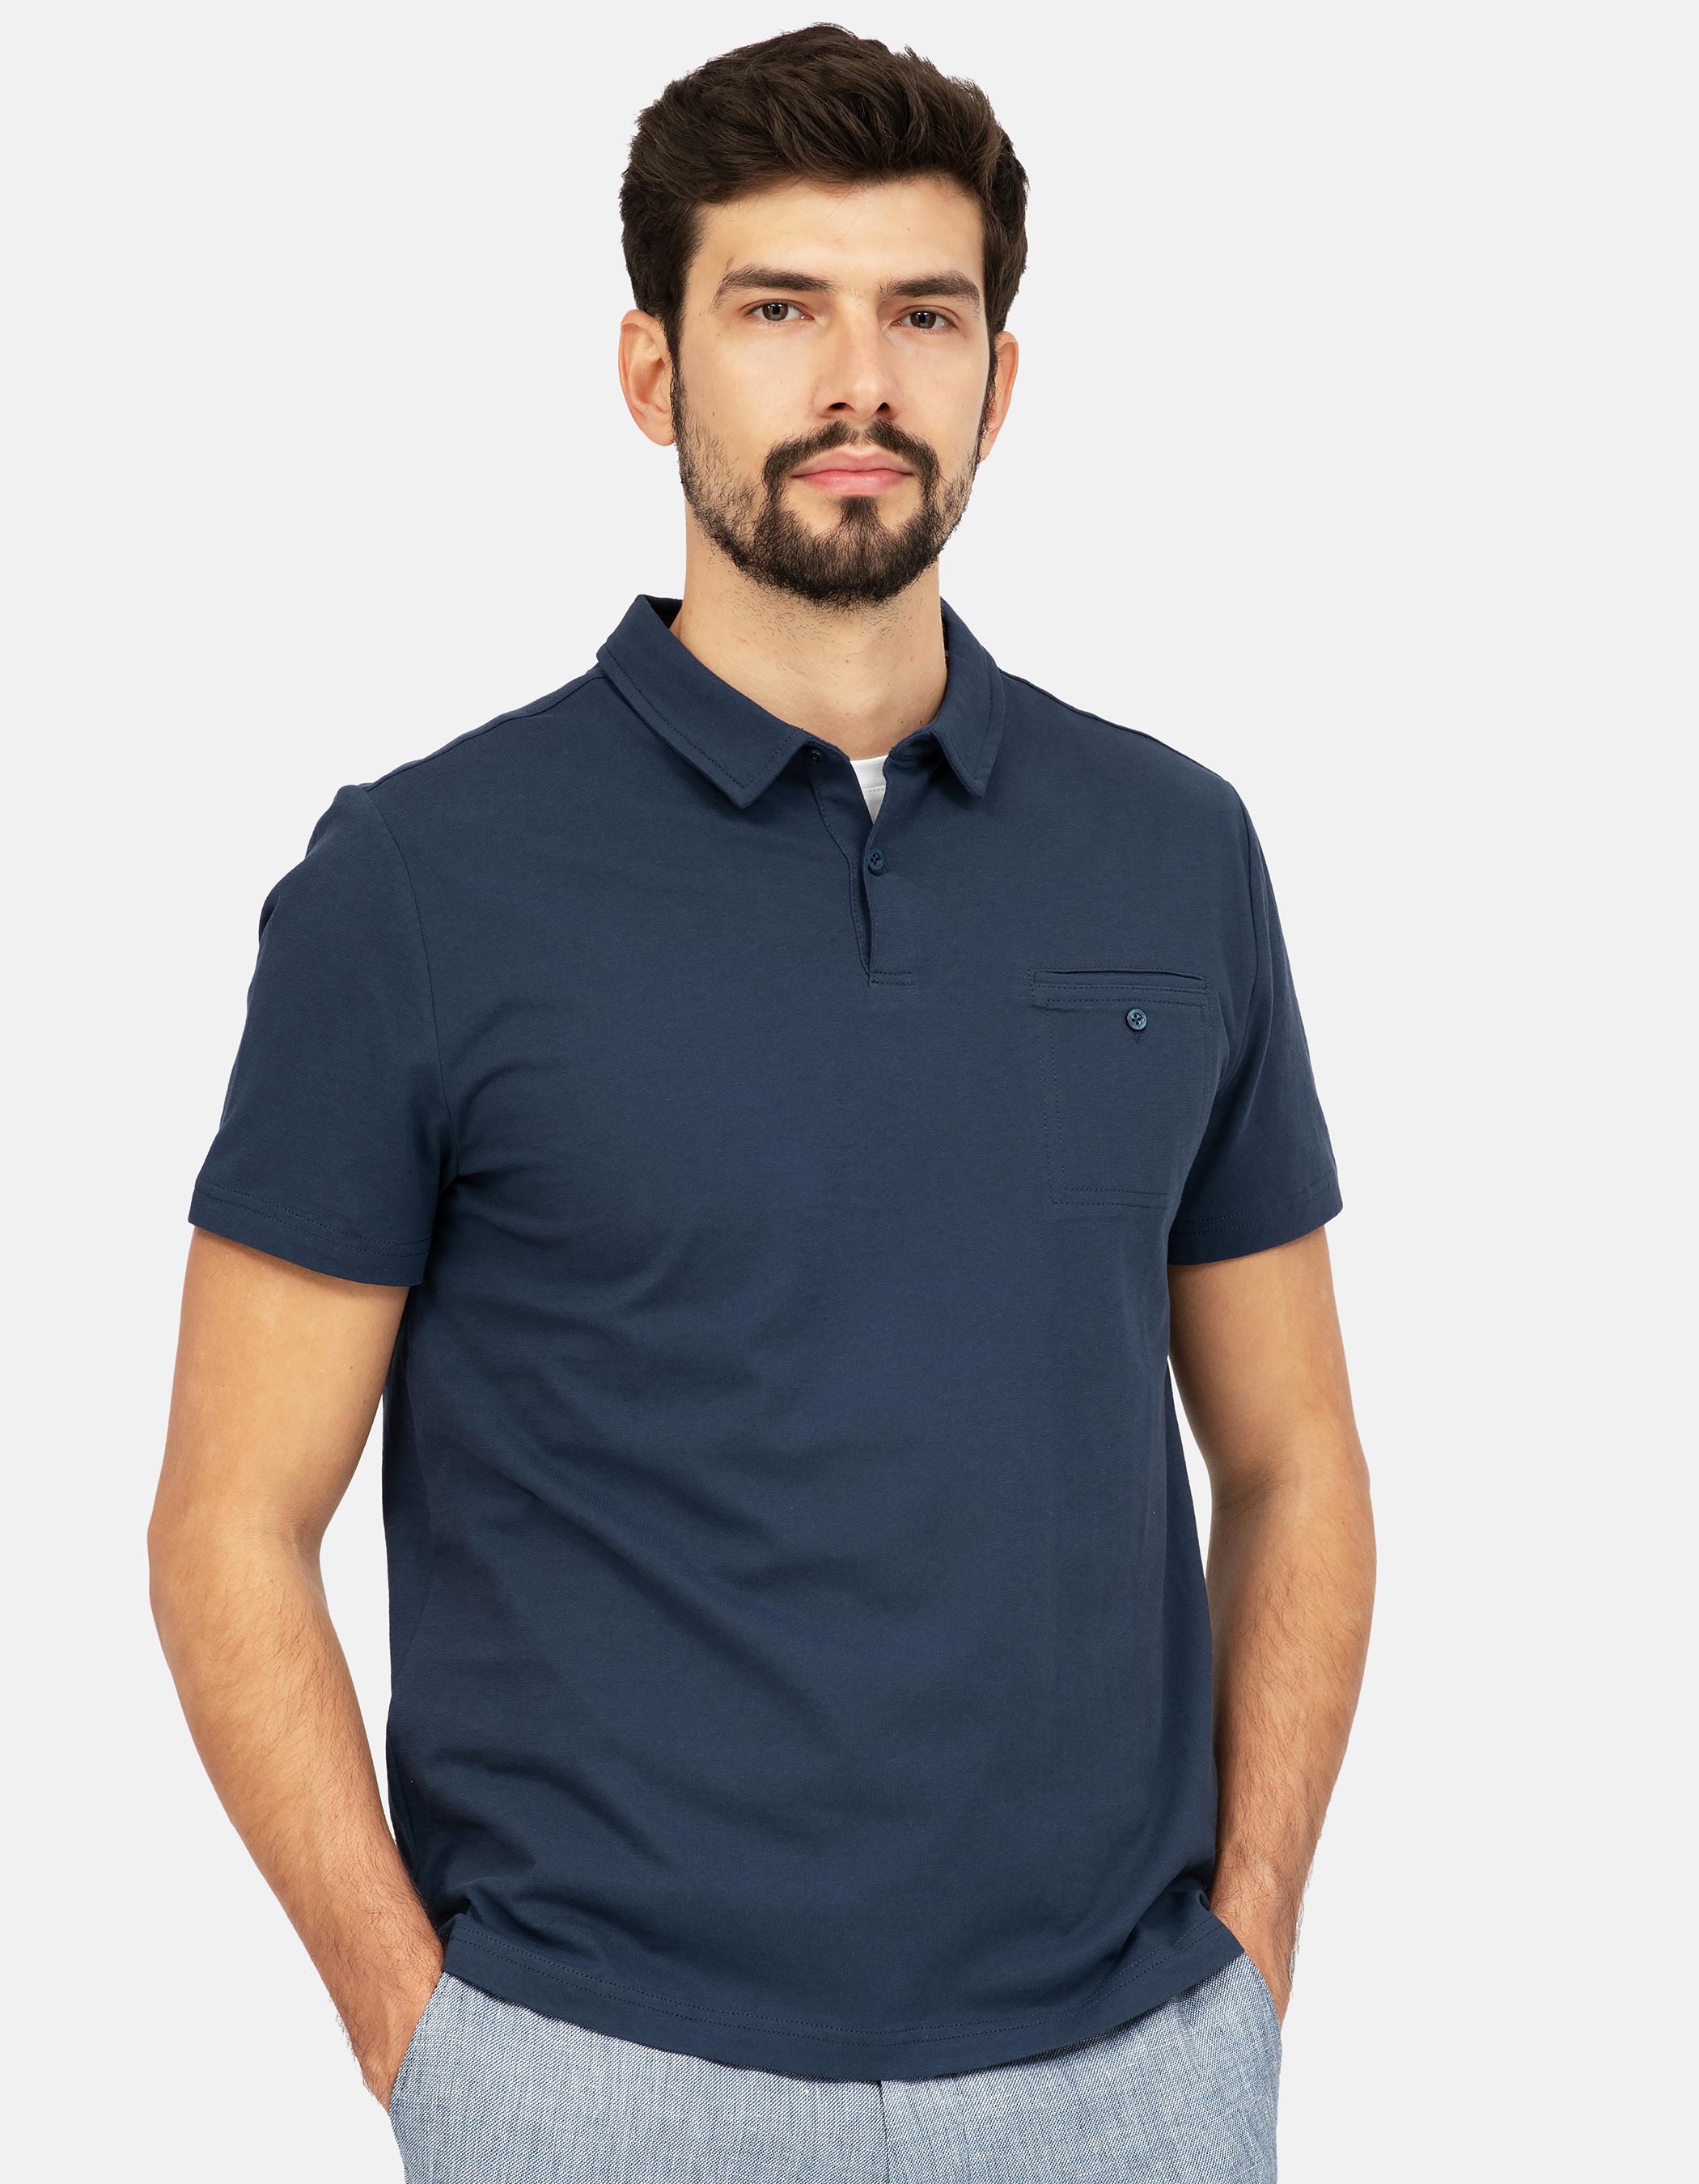 Navy blue pocket polo shirt